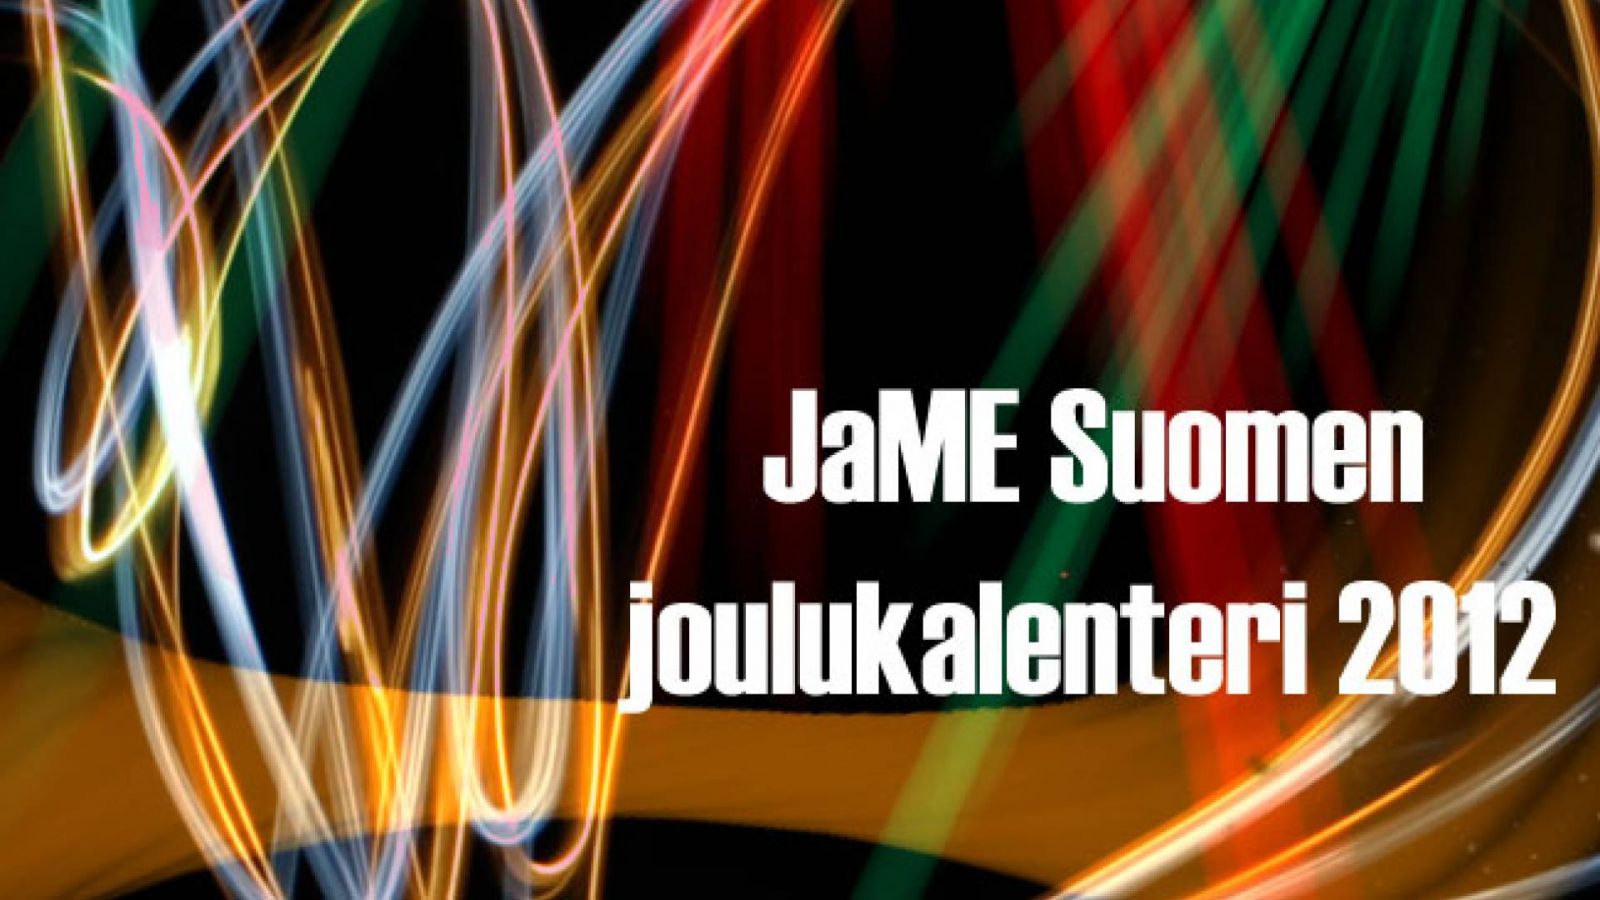 JaME Suomen joulukalenteri 2012 © rreichu, JaME Suomi